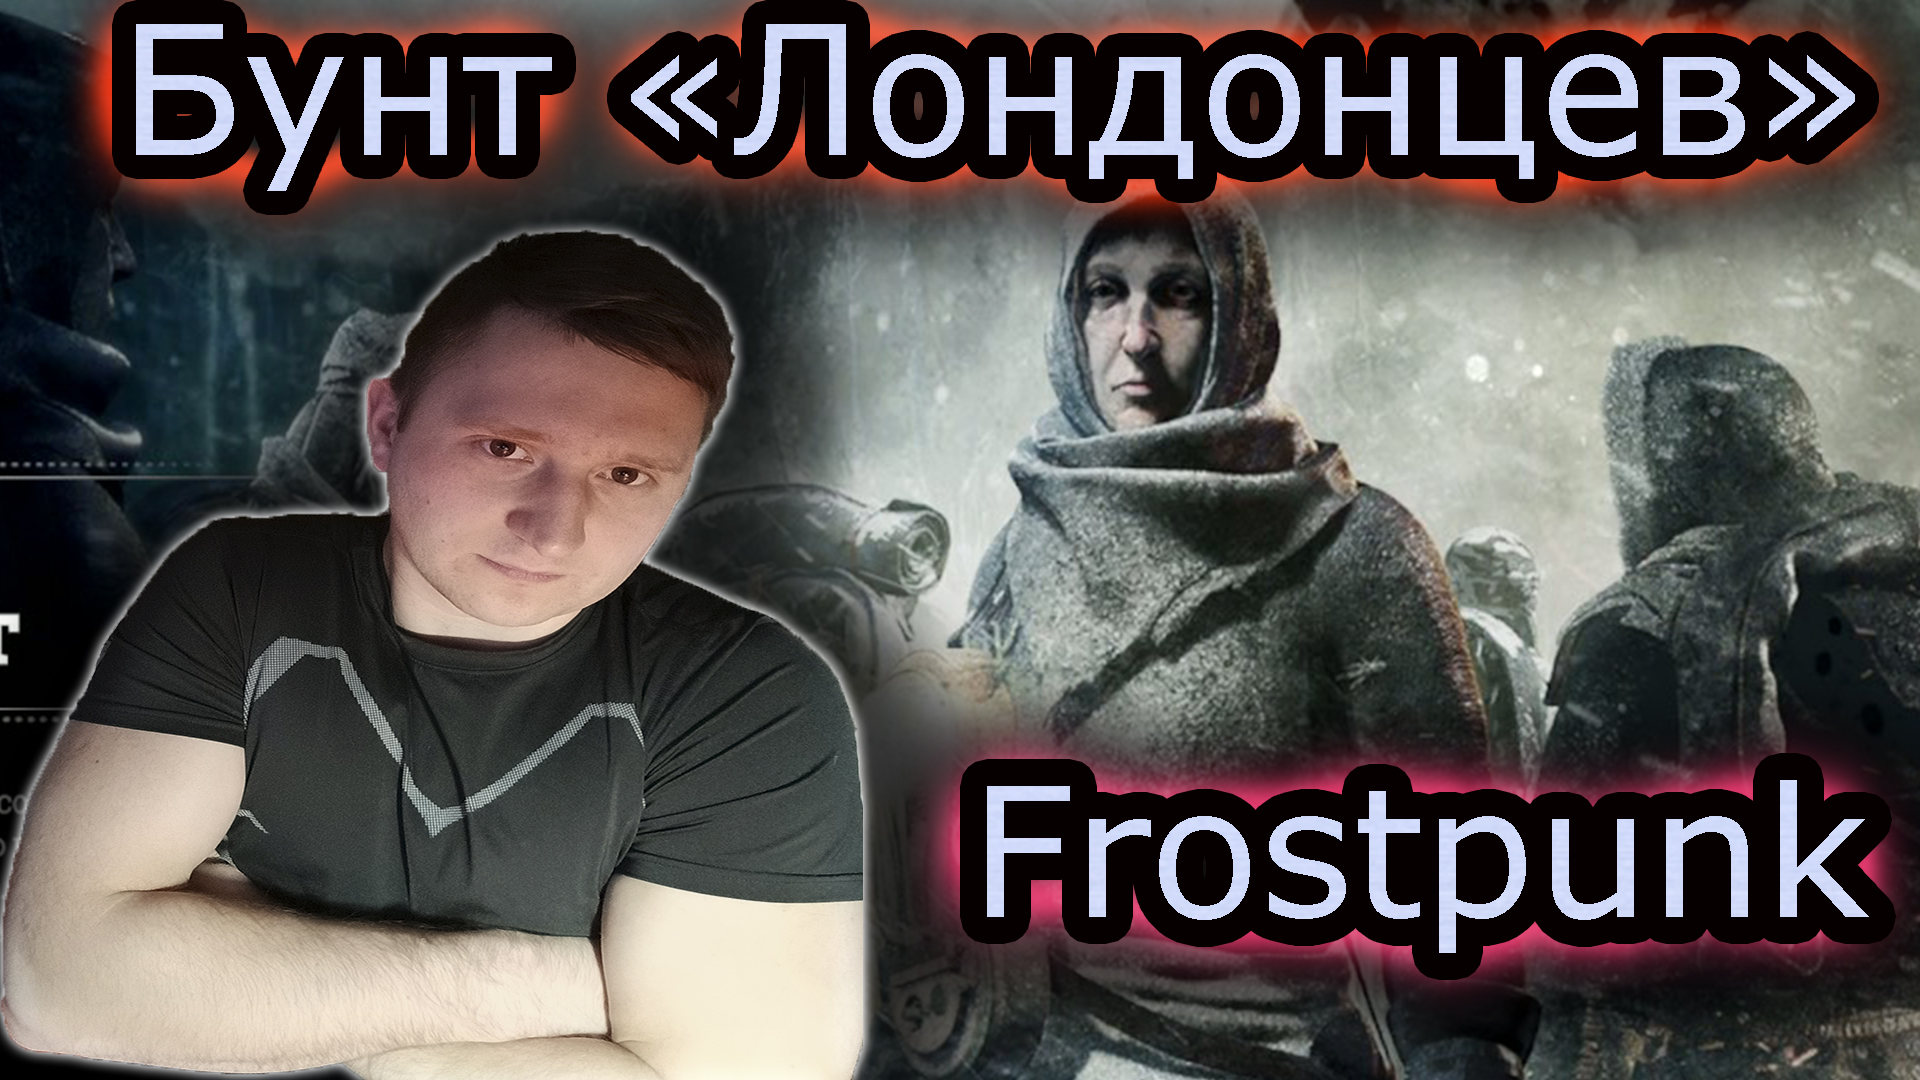 БУНТ "ЛОНДОНЦЕВ" & Frostpunk